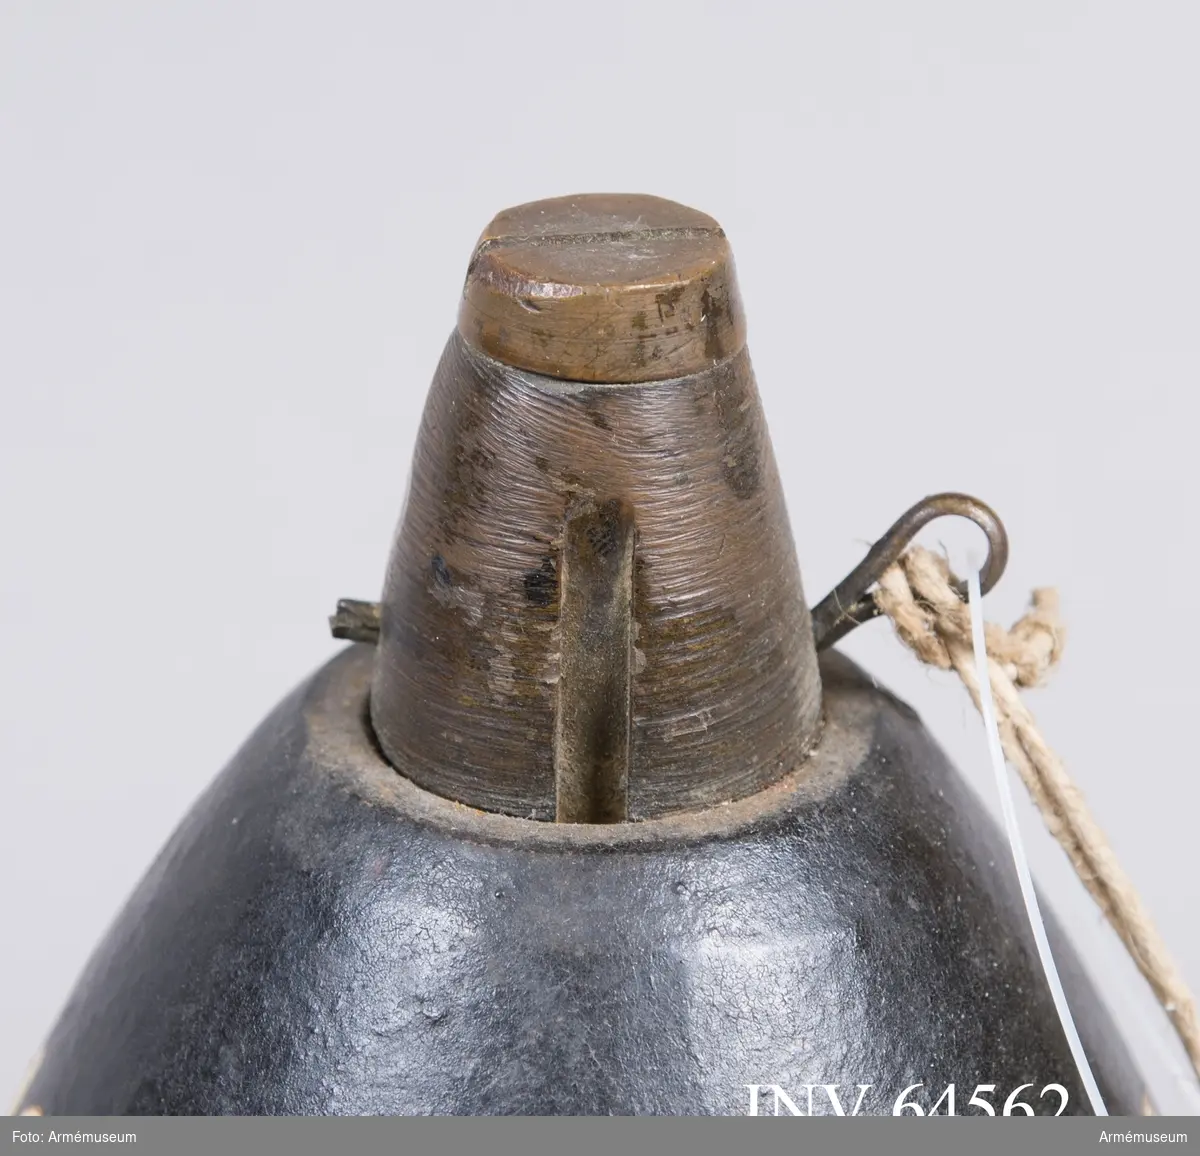 Grupp F II.
Sitter i 10 cm granat med kulor m/1868-82 till framladdningskanon.